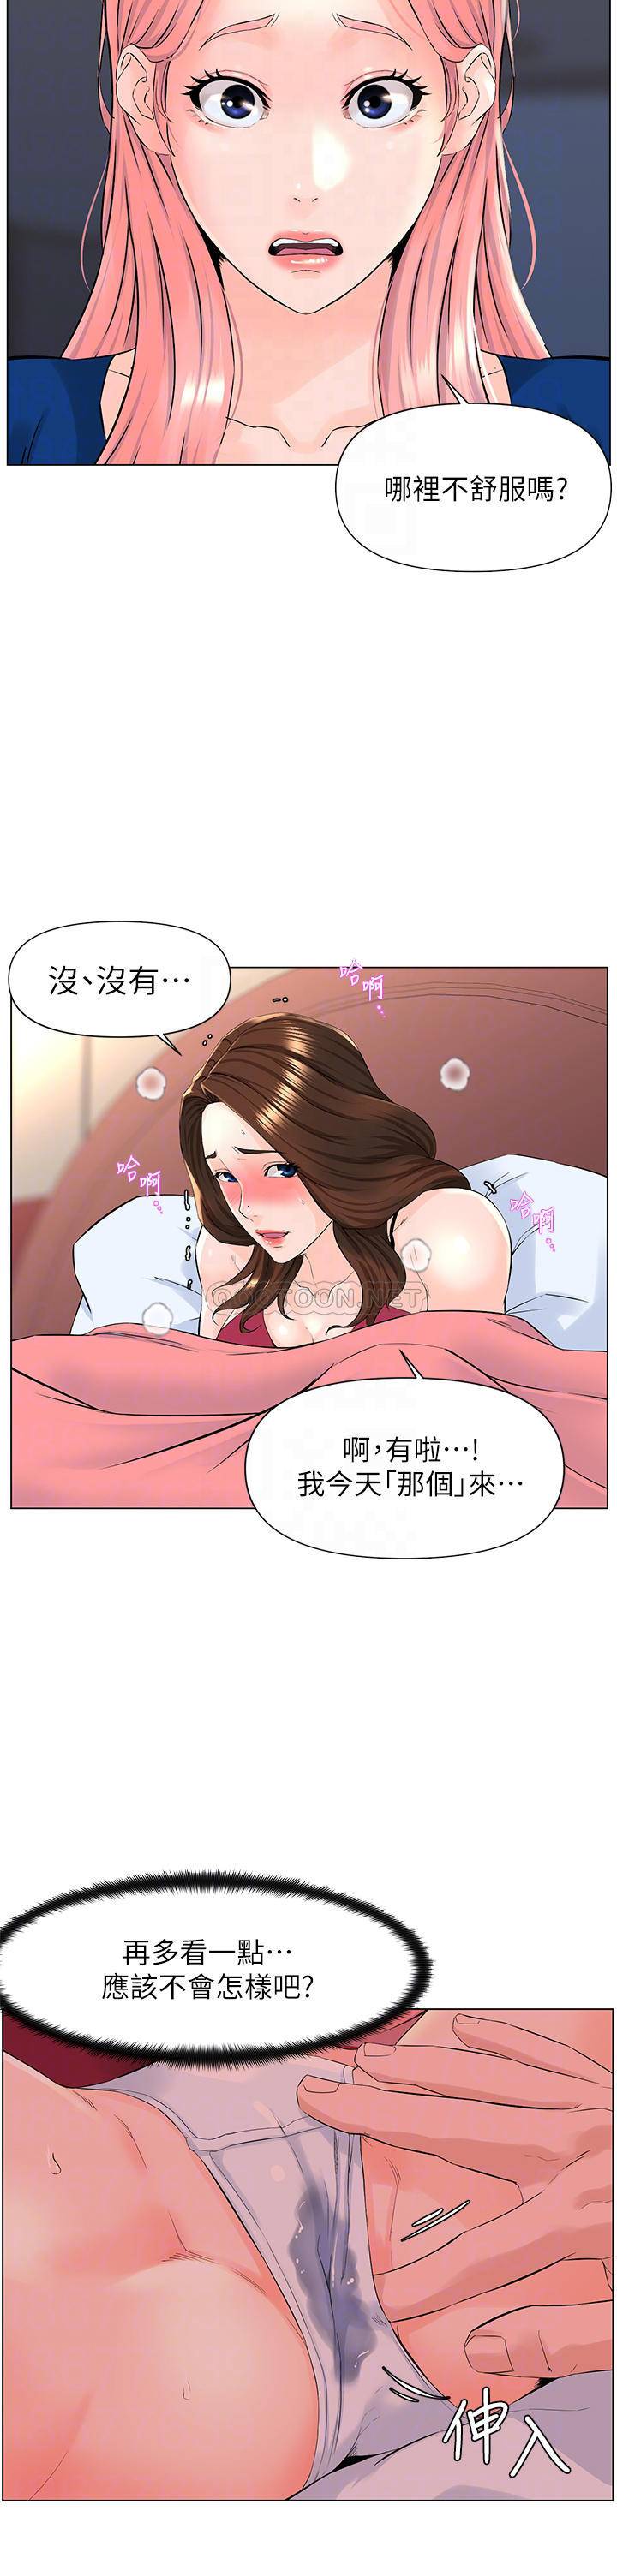 韩国污漫画 不良女房客 第36话喷到娜丽脸上的精液 10